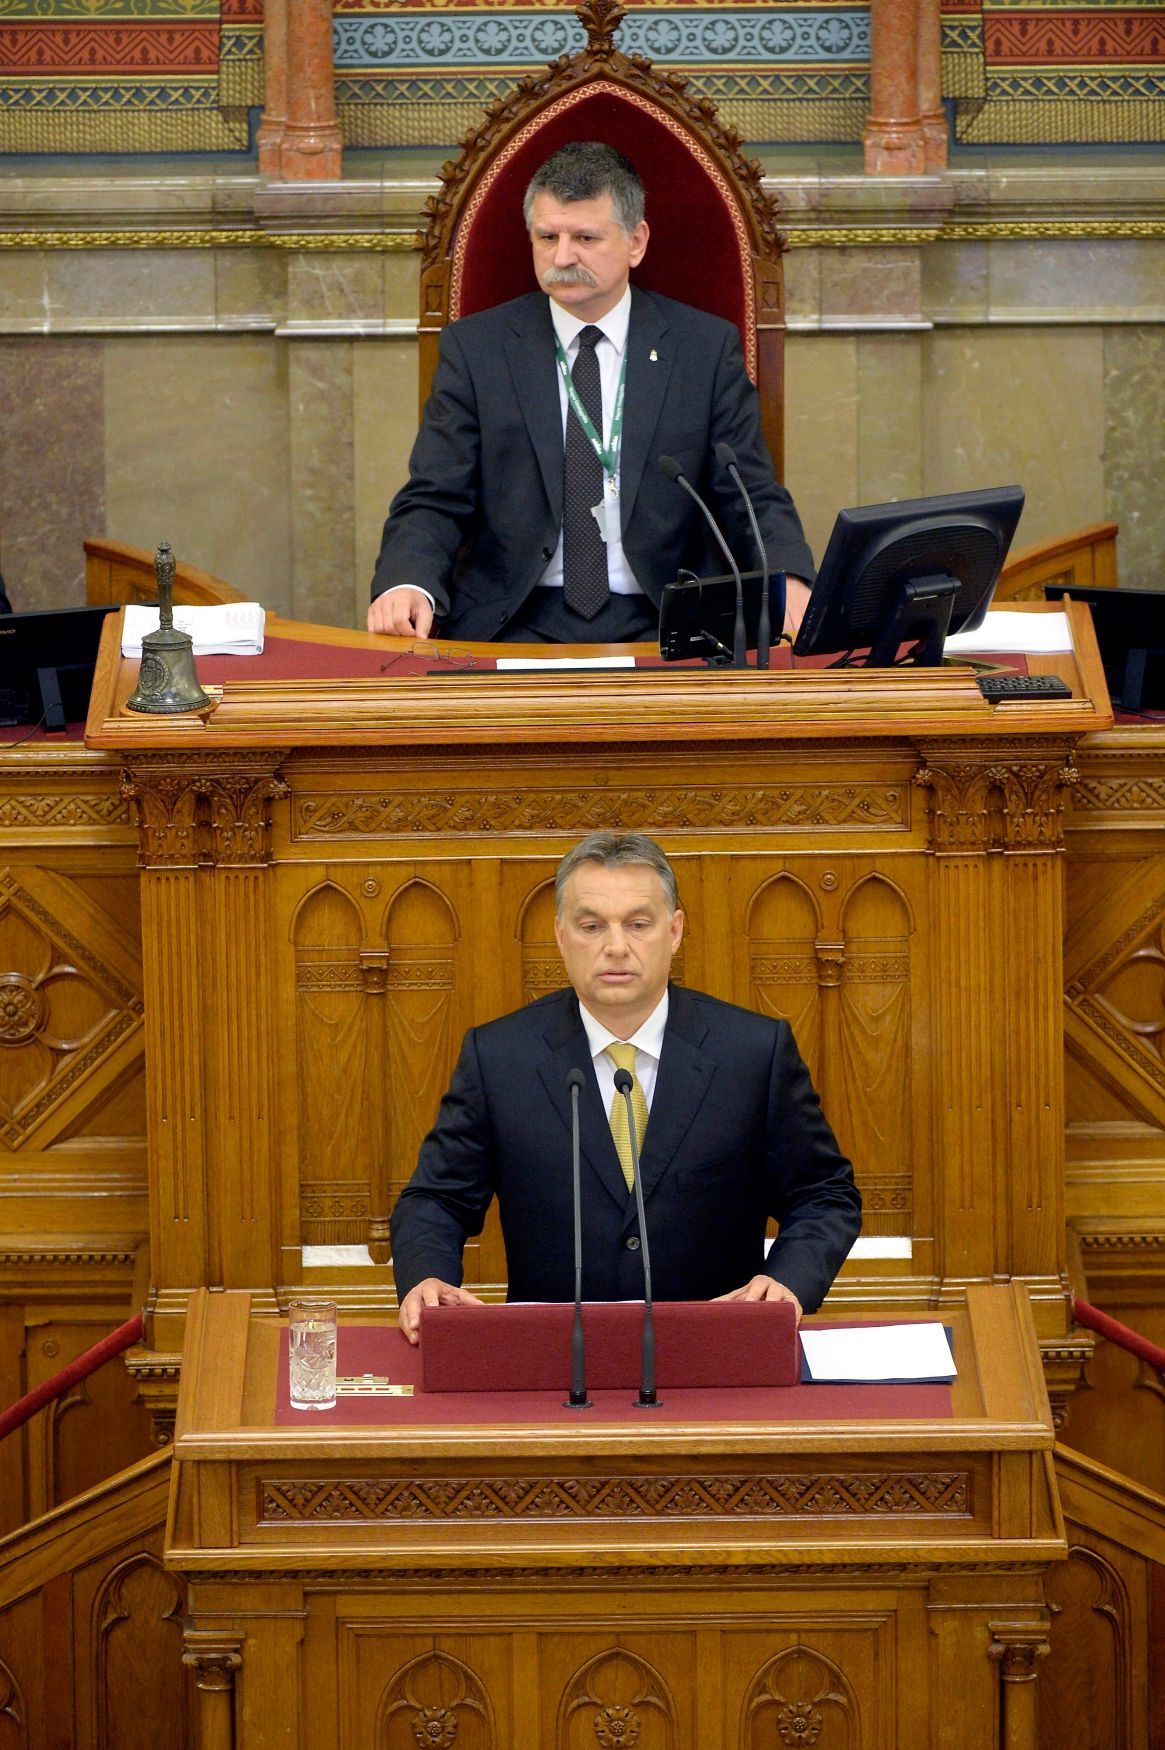 Maďarsko Viktor Orbán László Köver